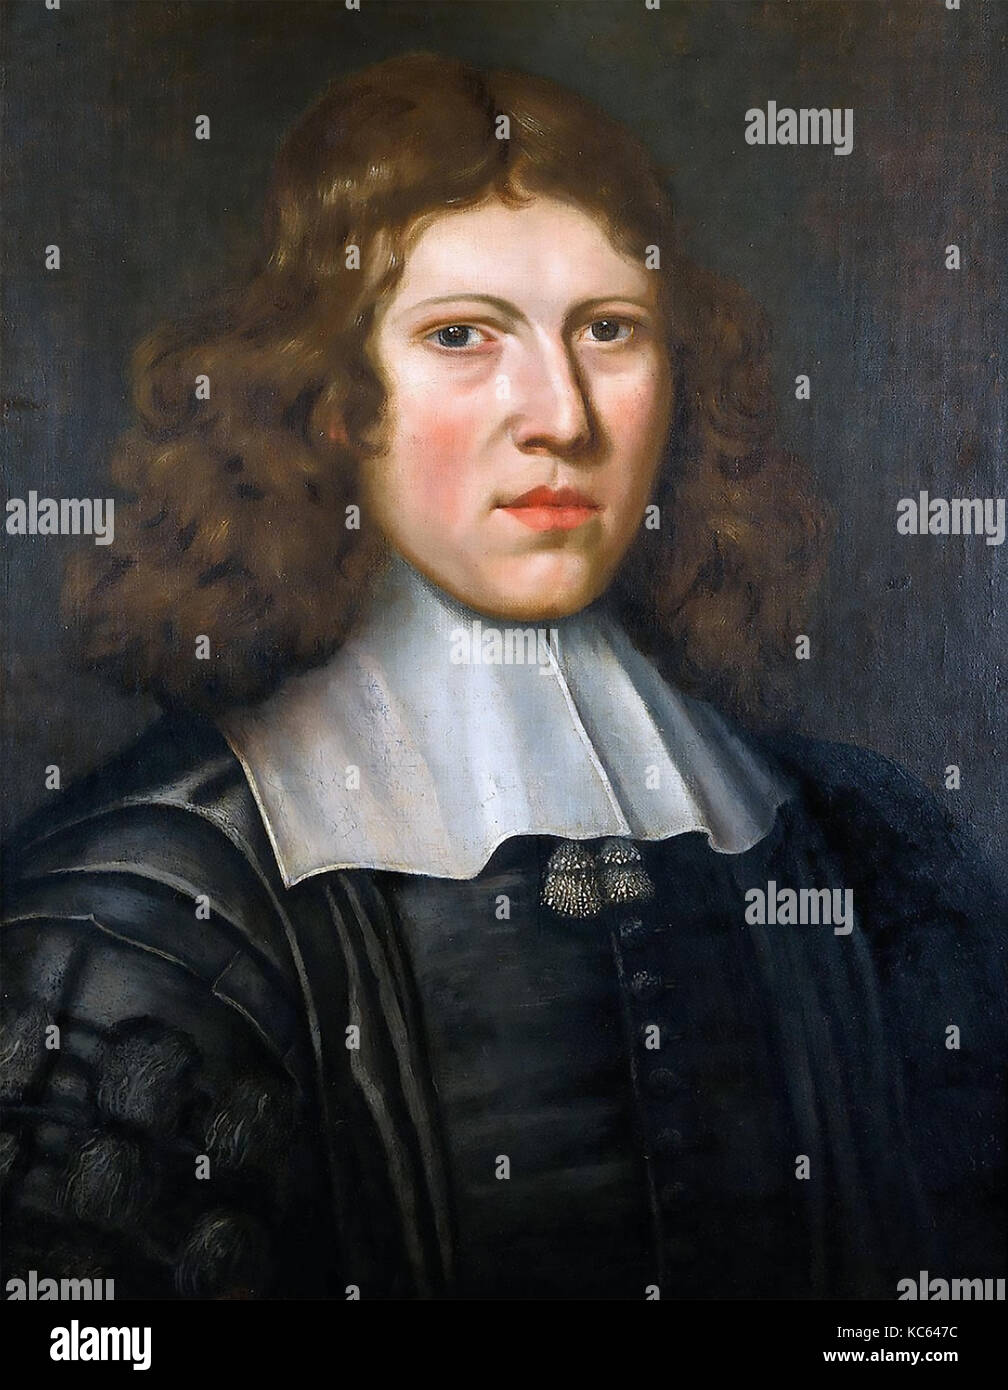 Richard LOWER (1631-1691) médecin anglais peint par l'artiste flamand Jacob Huysmans vers 1665 Banque D'Images